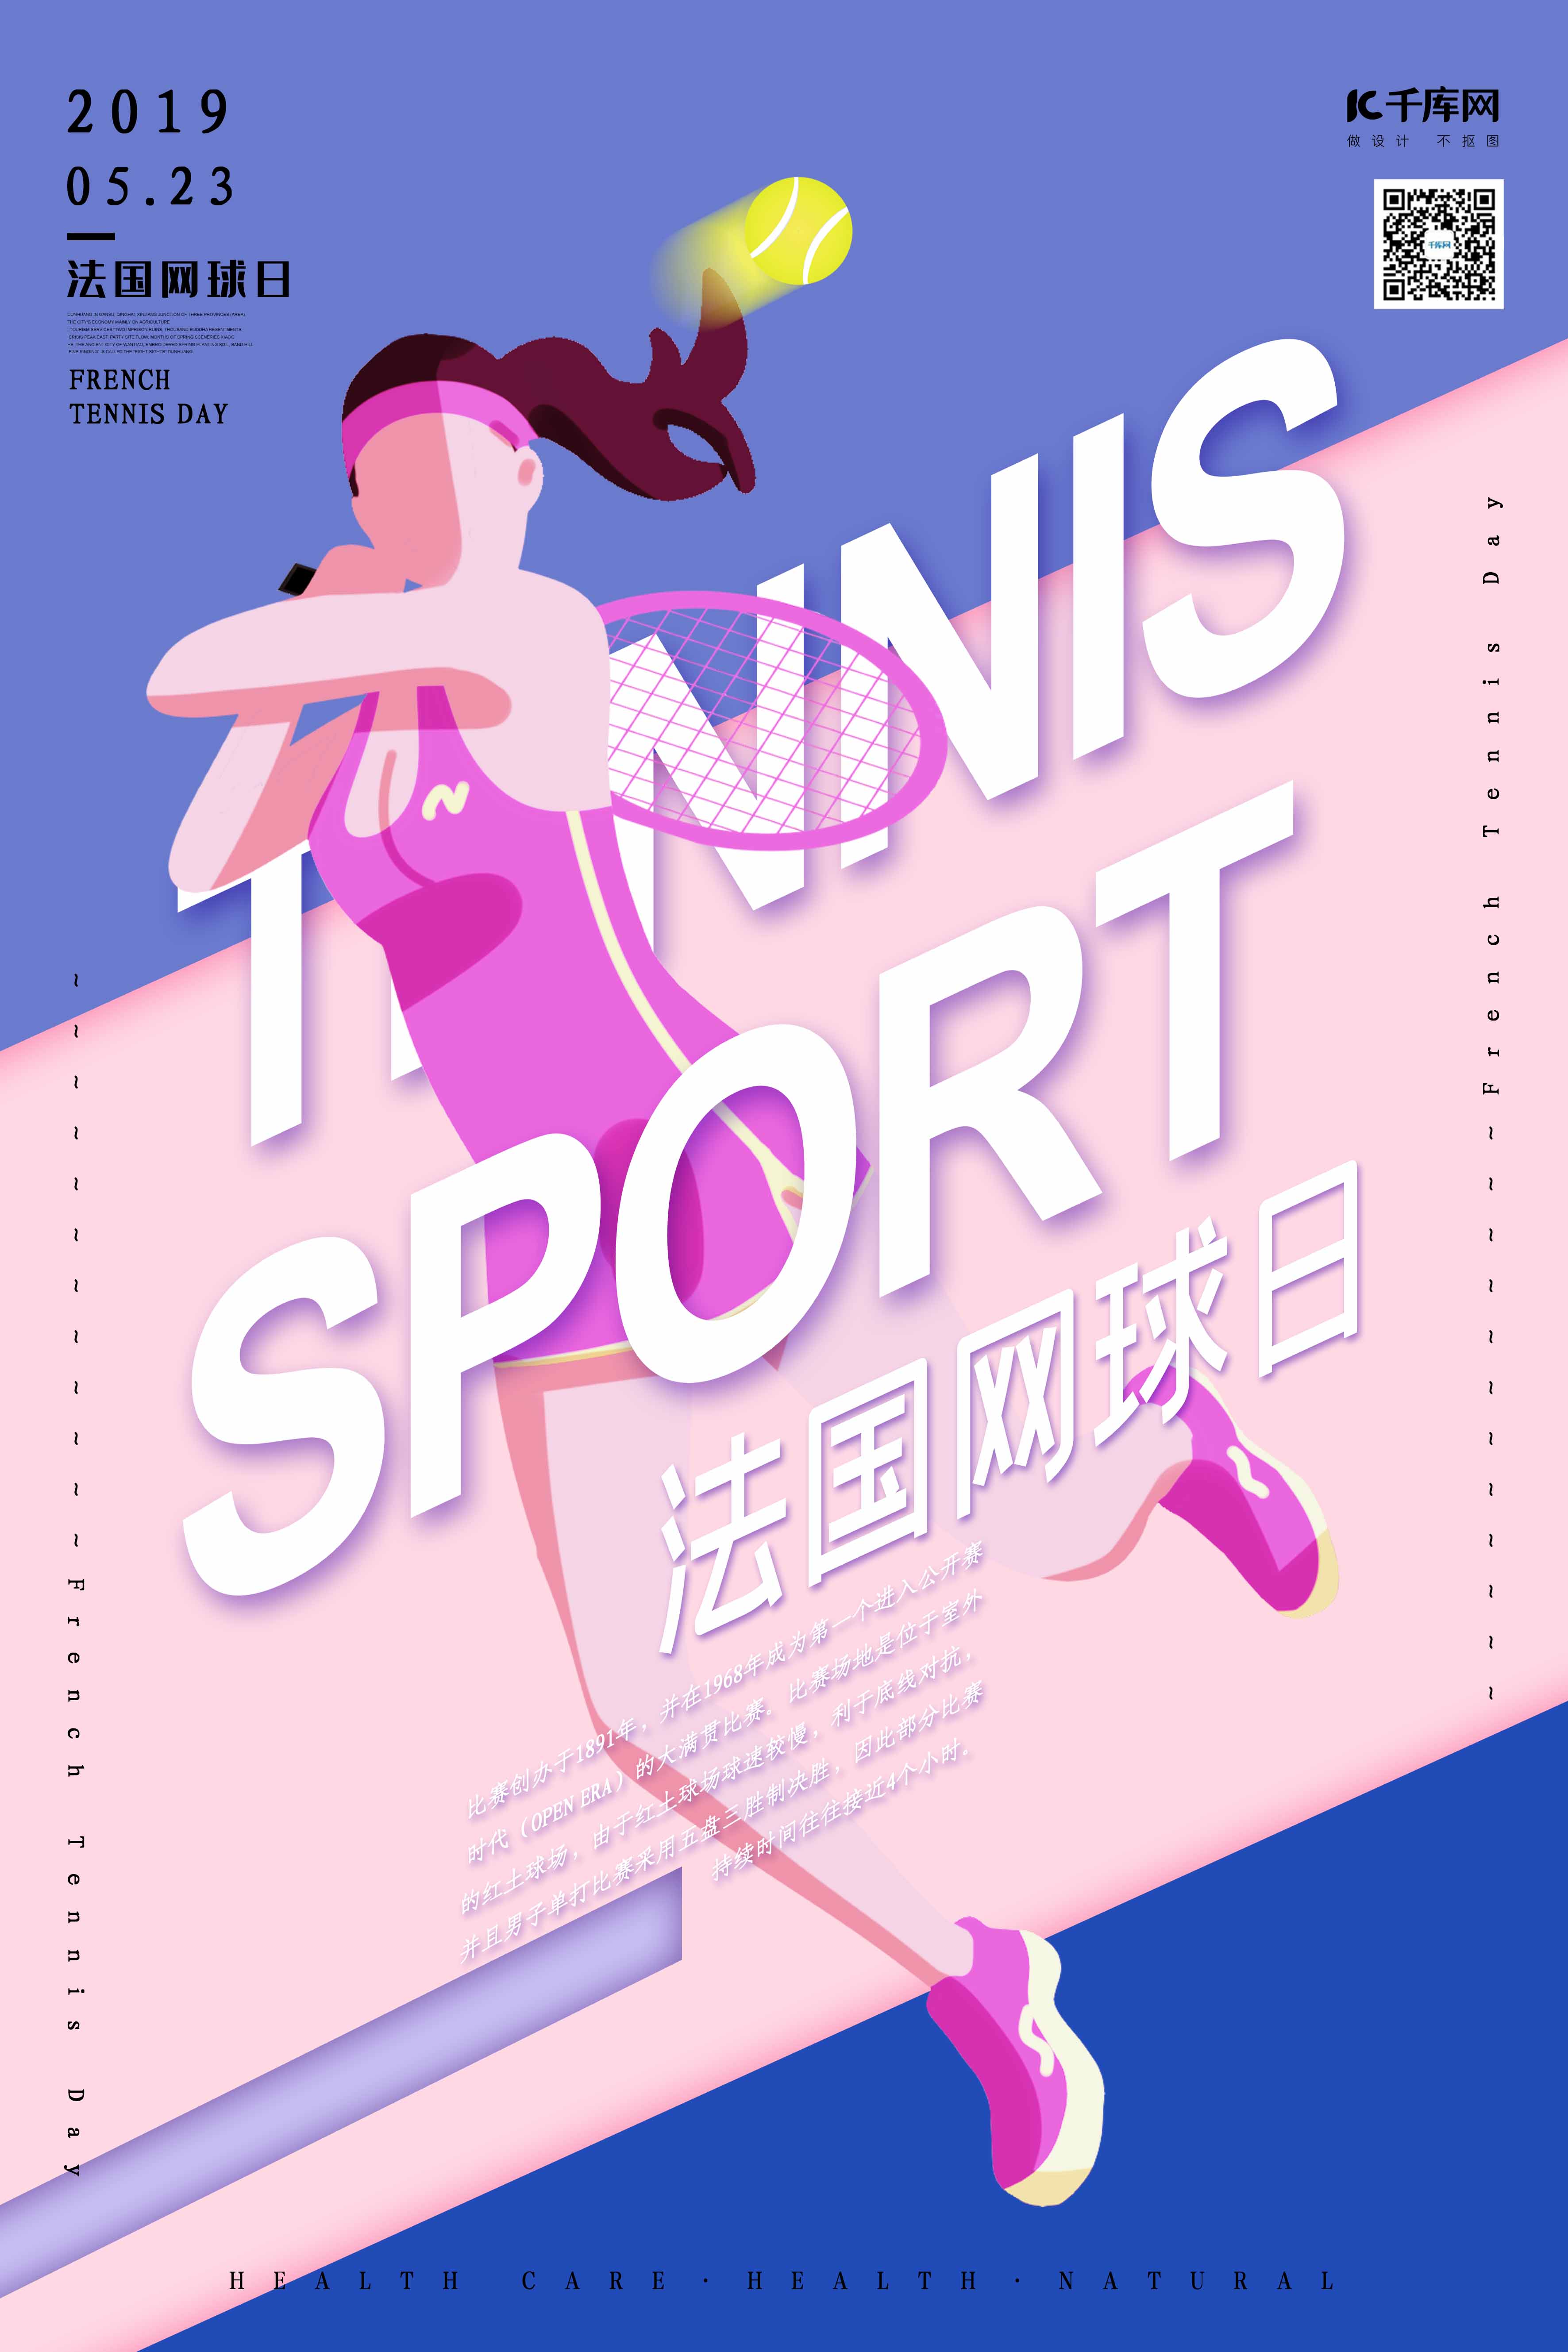 法国网球日网球运动柔色撞色斜切扁平化海报图片